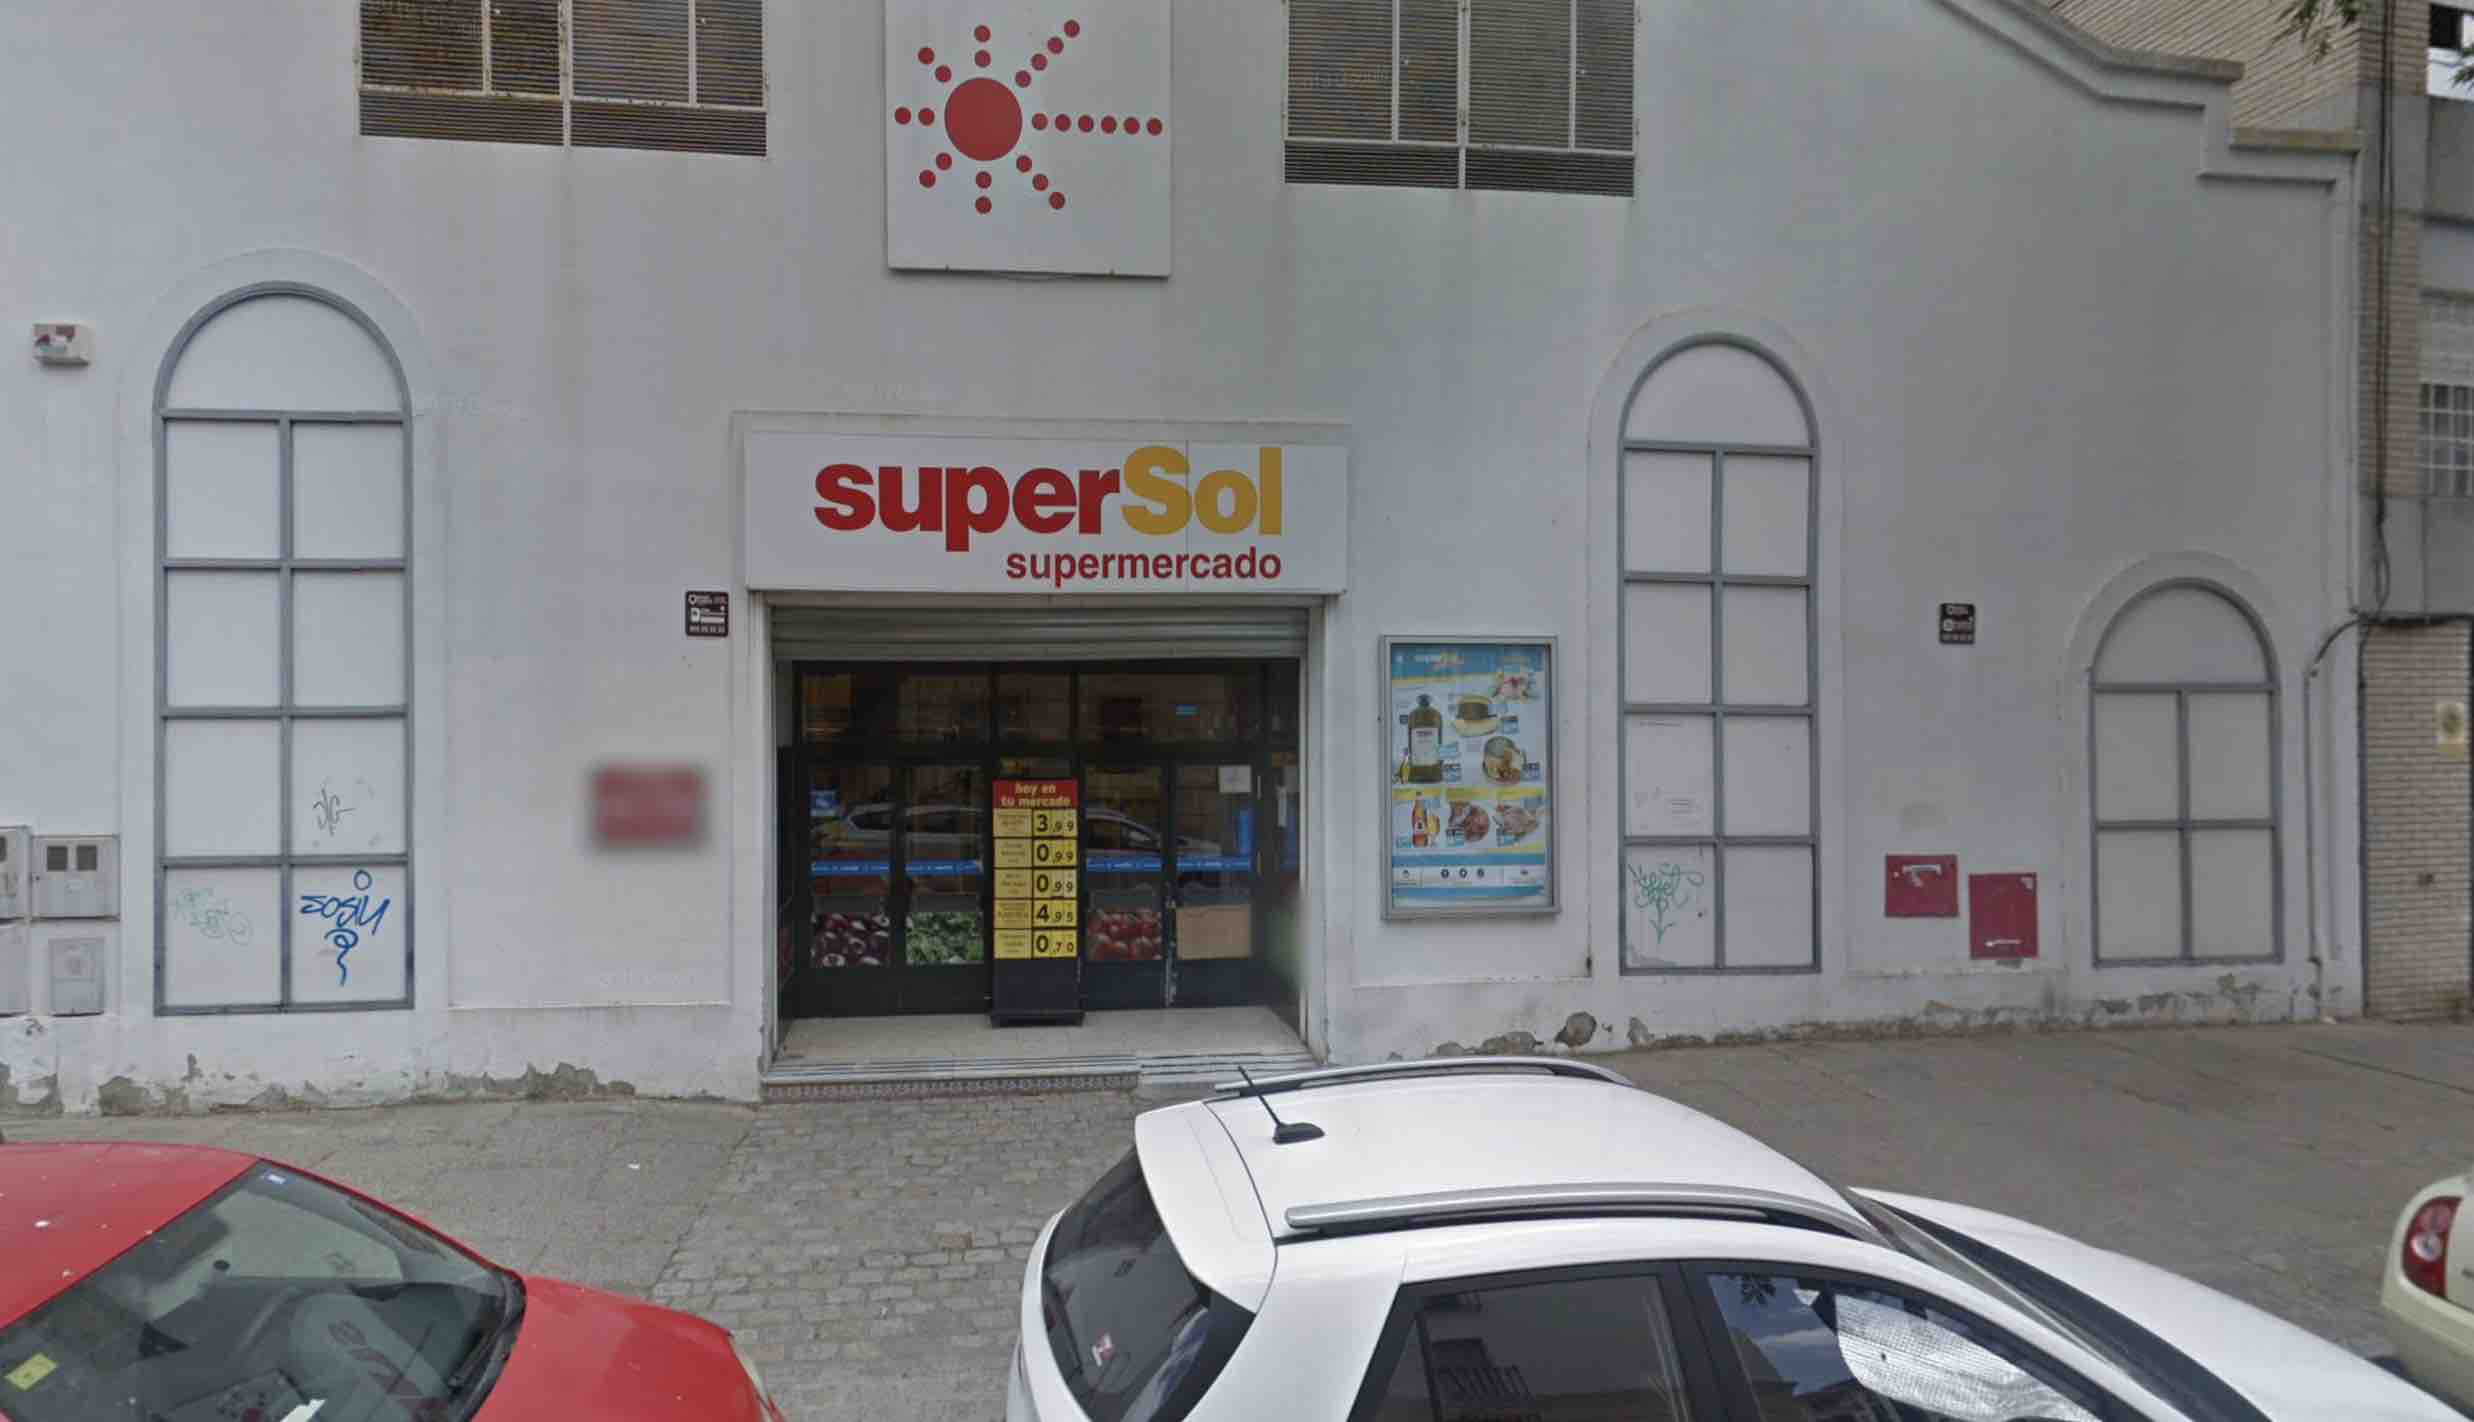 Supersol cierra su última tienda en Jerez tras ser absorbido por Carrefour: peligran 15 empleos.